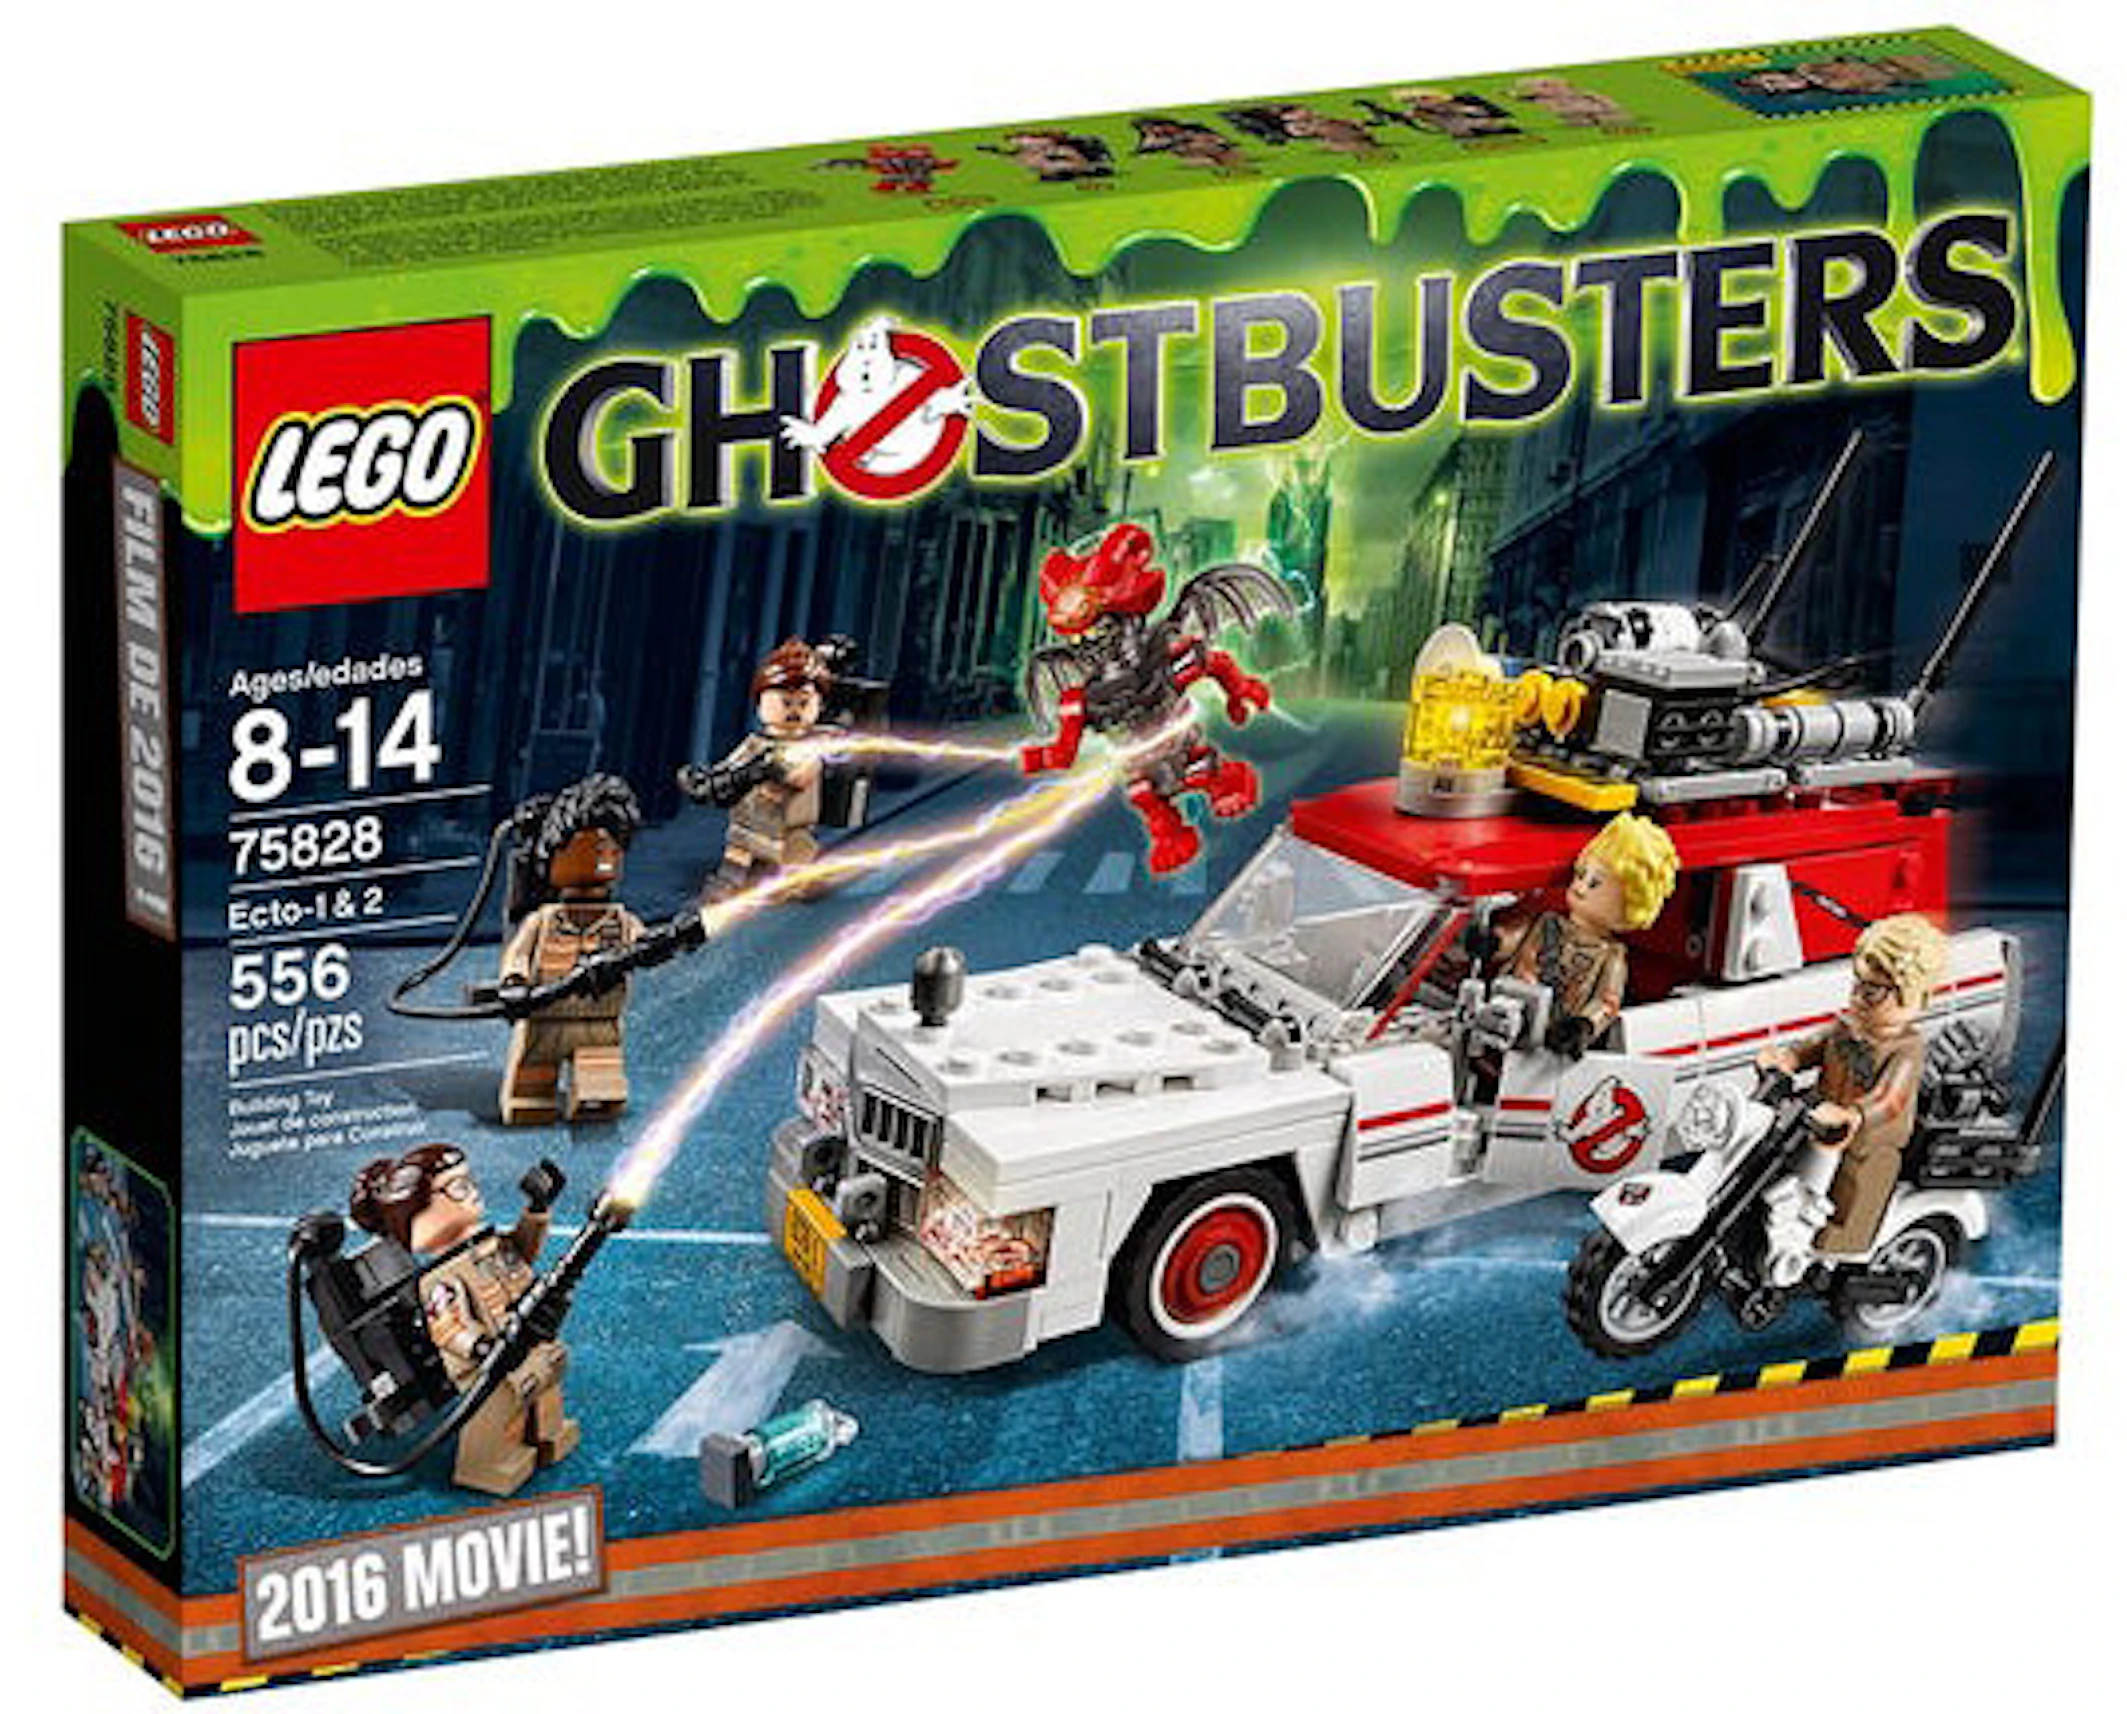 LEGO Ghostbusters Ecto-1 u0026 2 Set 75828 - US